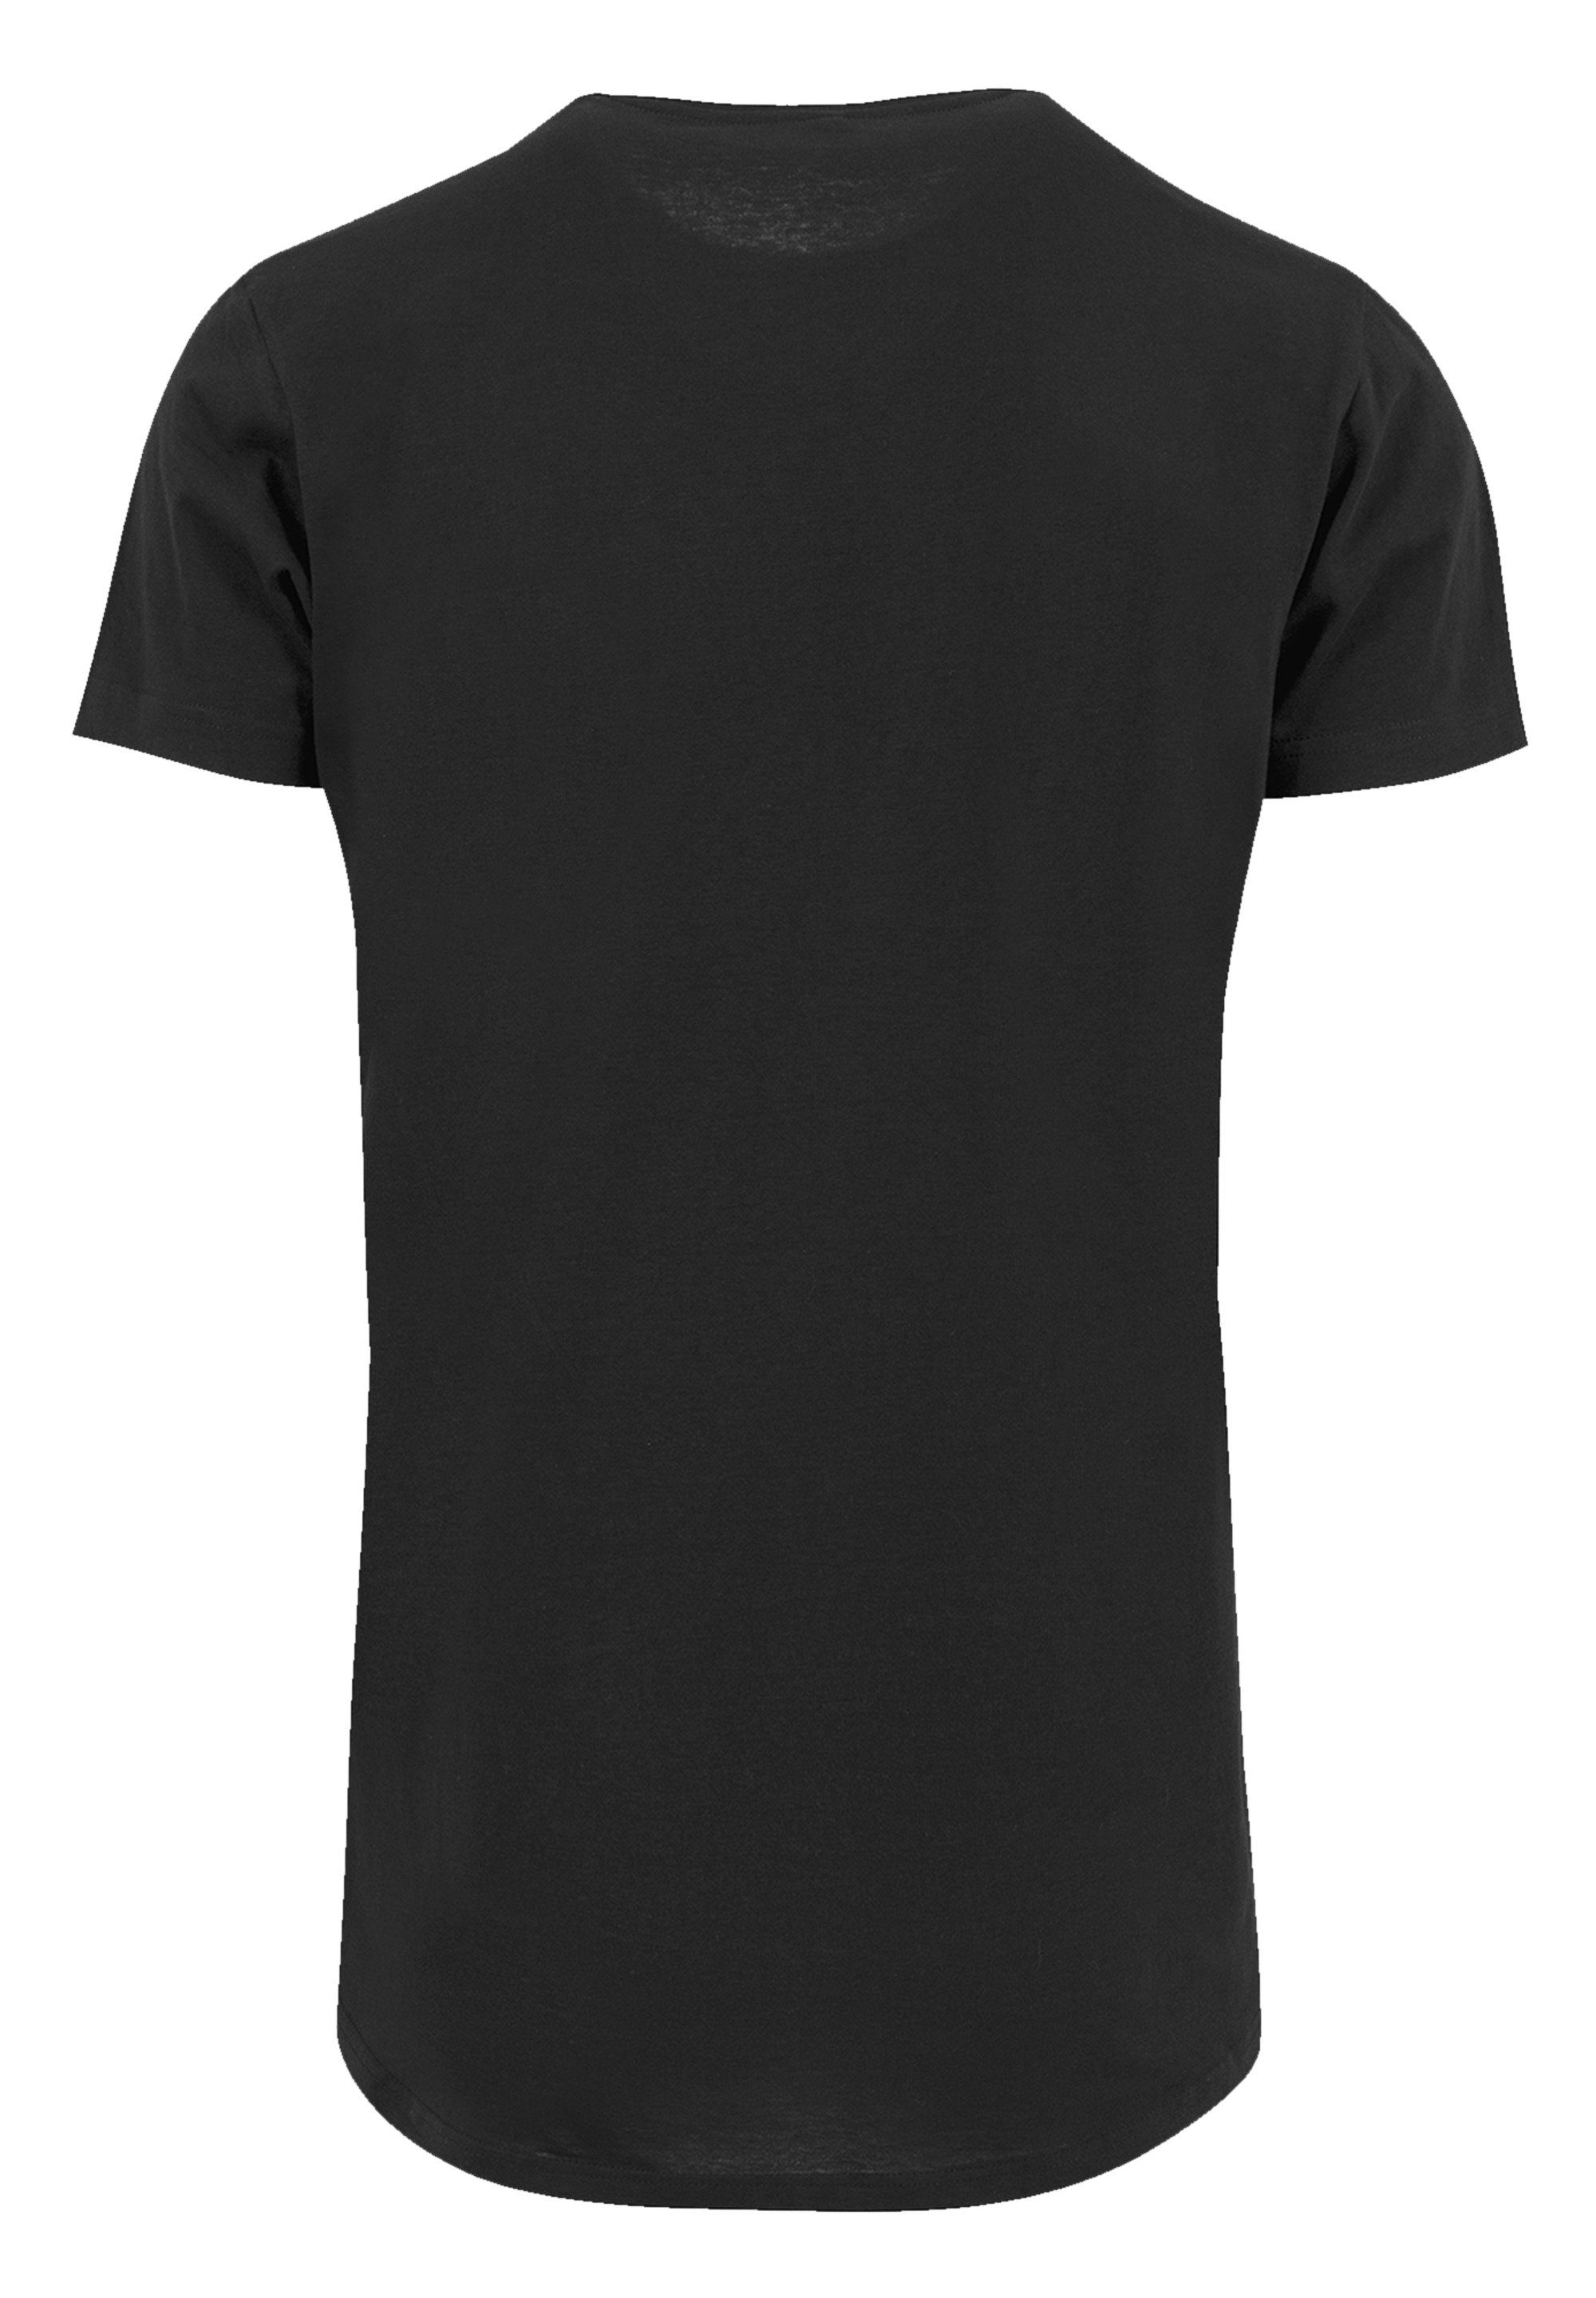 F4NT4STIC T-Shirt Ramones Rock Musik Band Red Text Seal Premium Qualität,  Band, Rock-Musik, Sehr weicher Baumwollstoff mit hohem Tragekomfort | T-Shirts